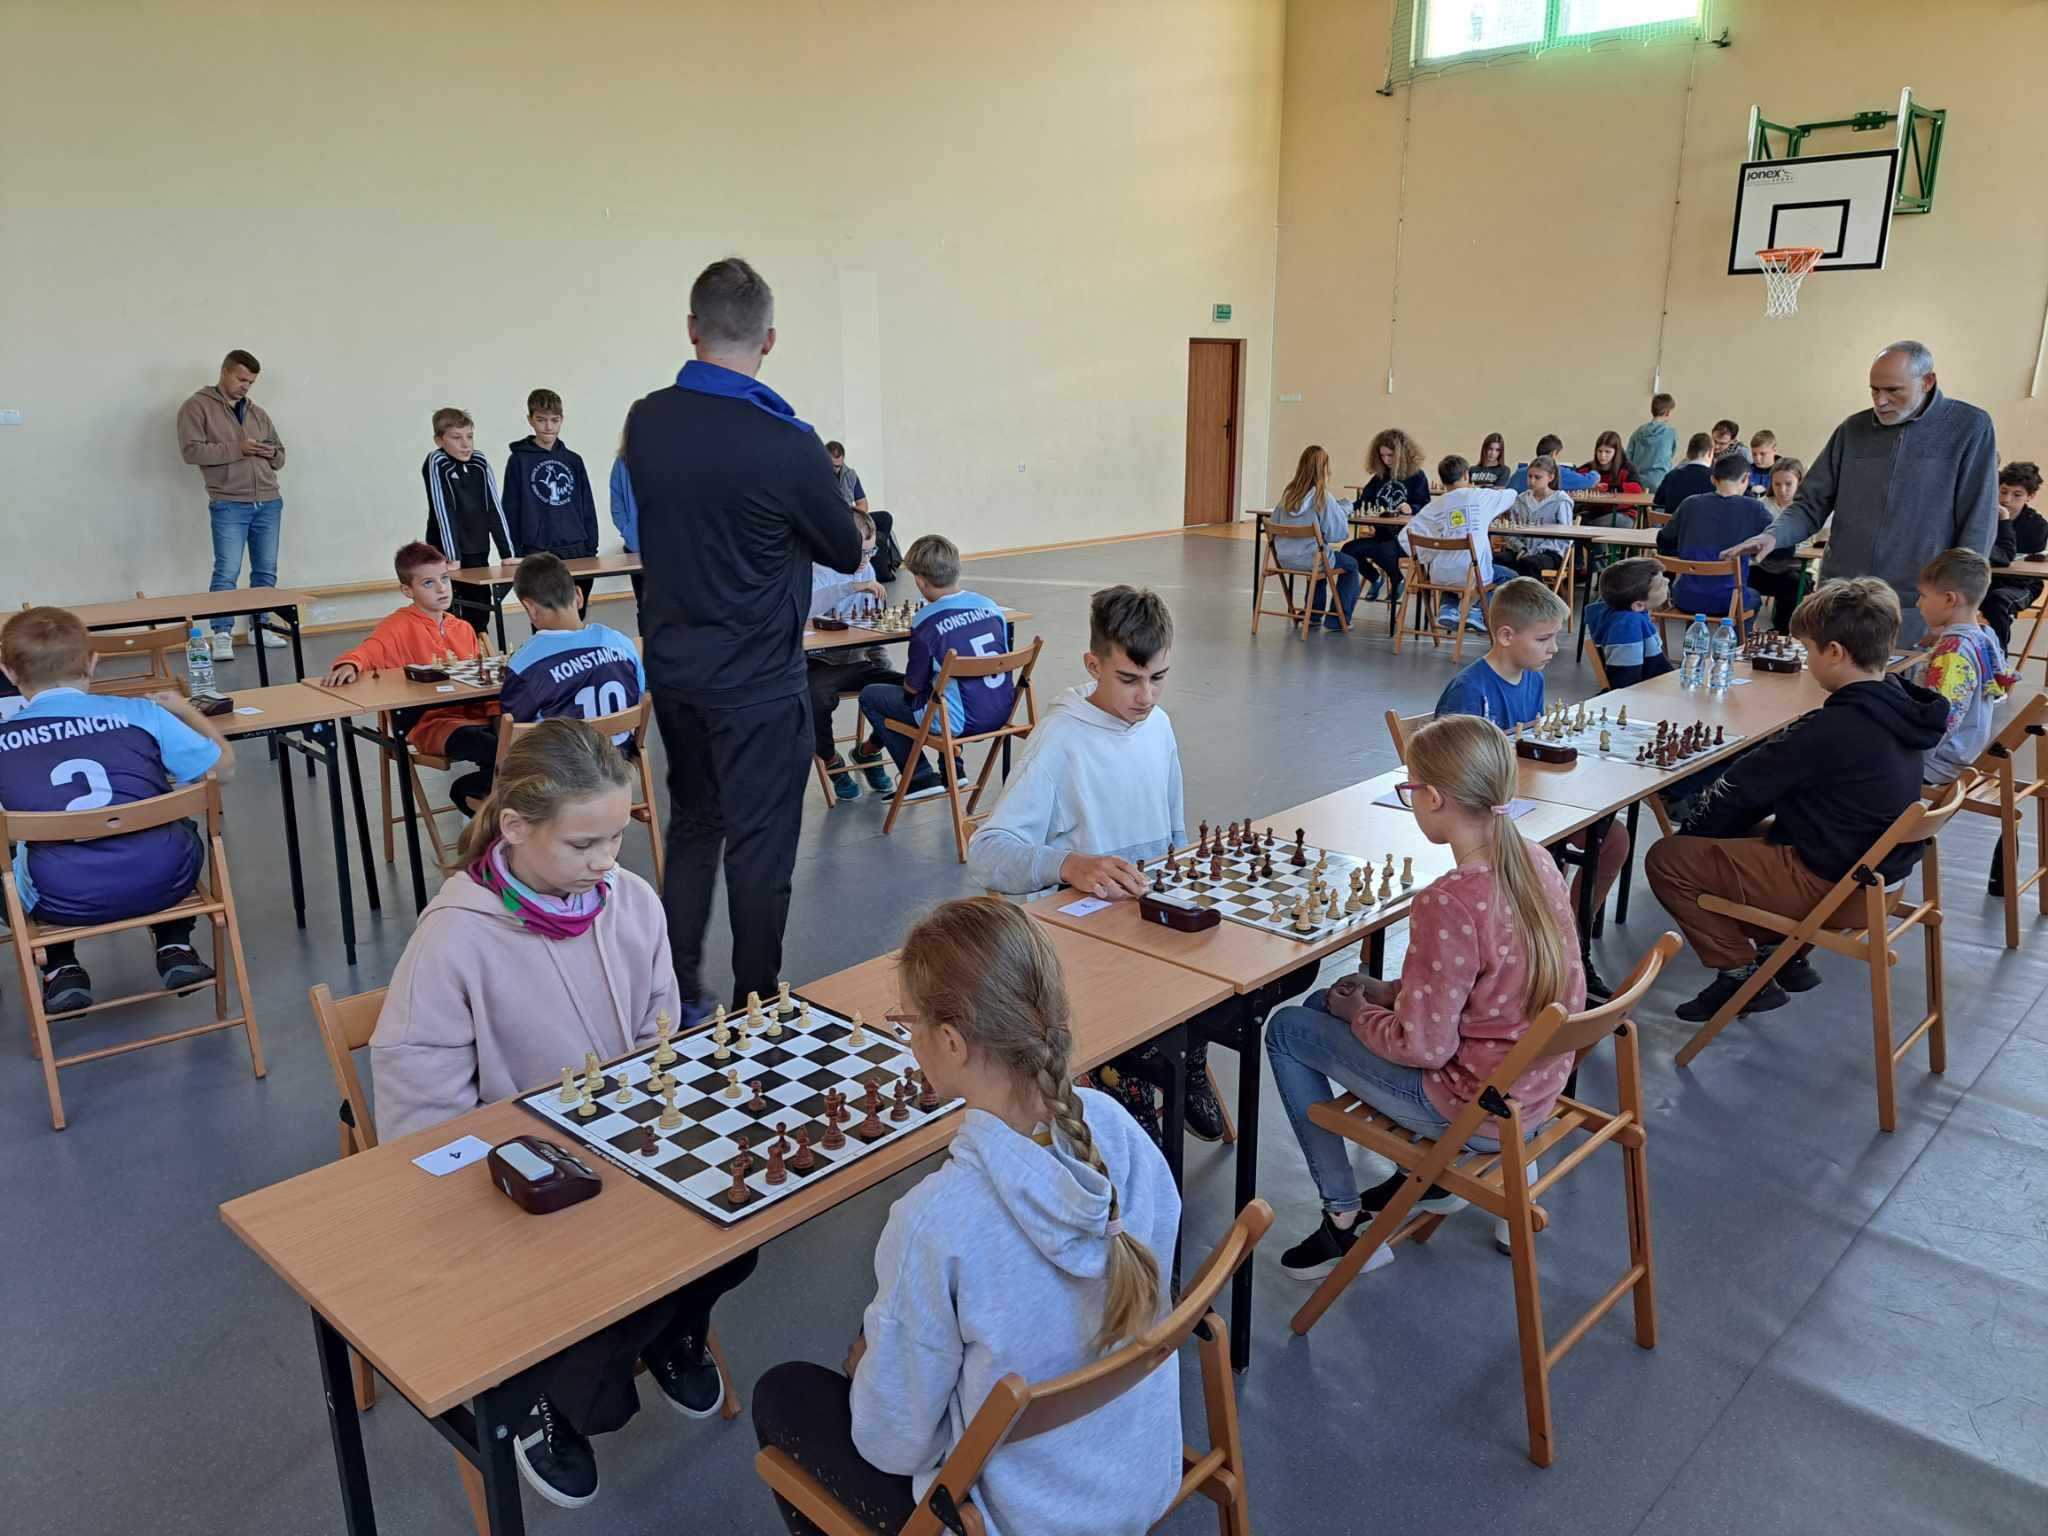 Dzieci siedzą przy stolikach i grają w szachy